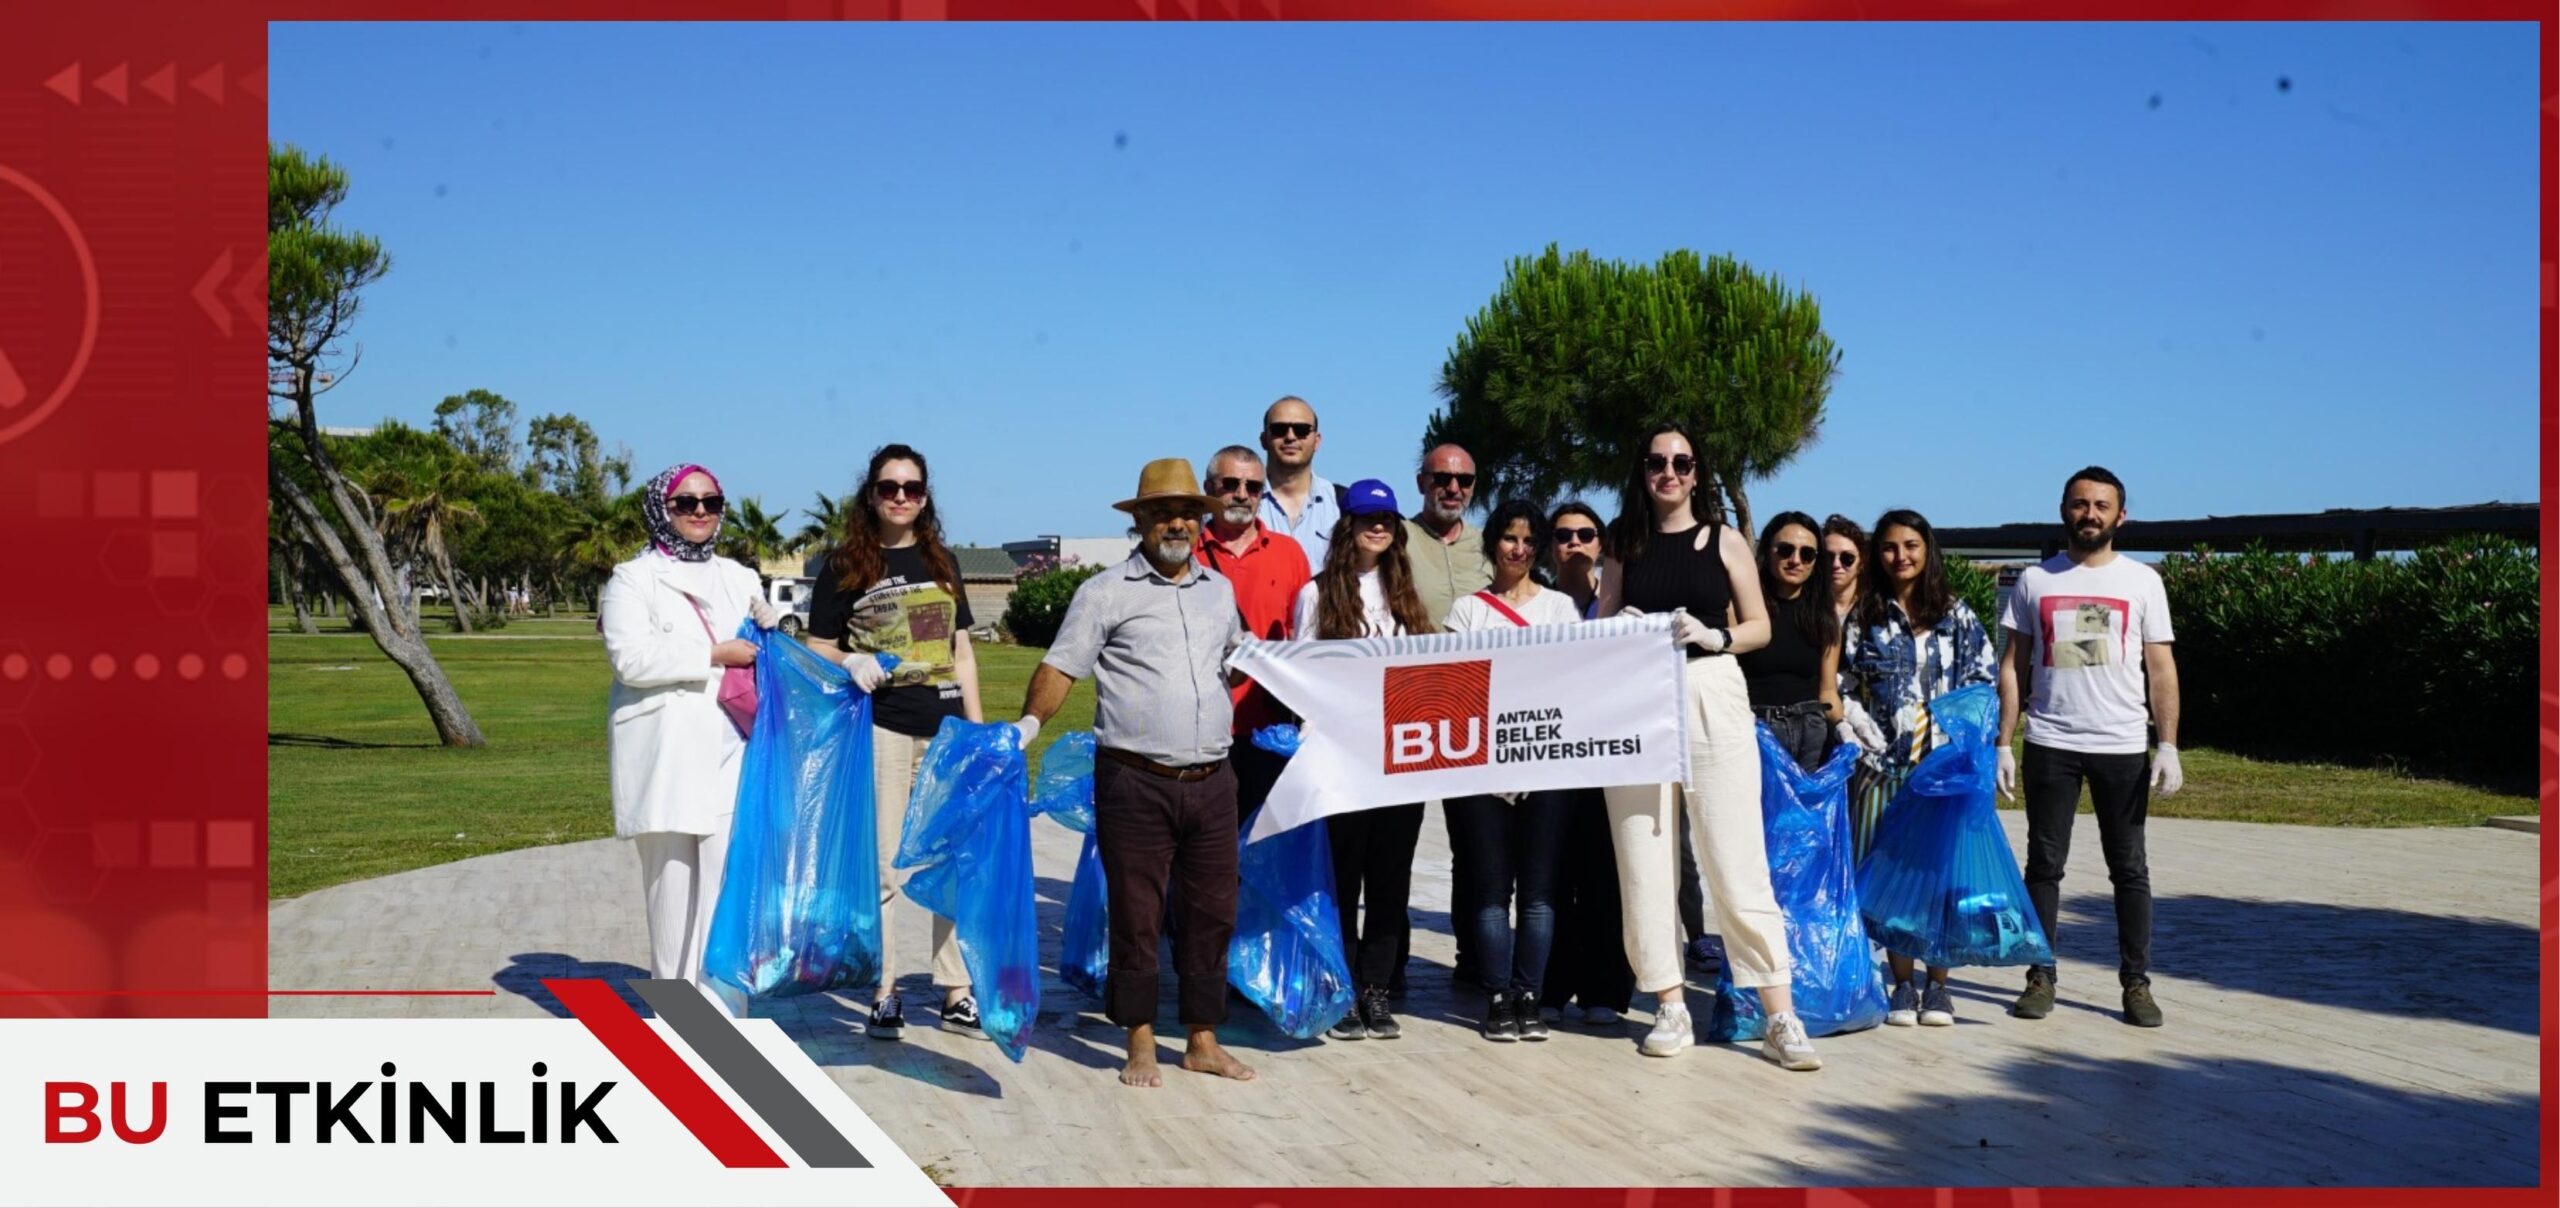 antalyabelek universitesi find and study 2 scaled - Antalya Belek Universiteti